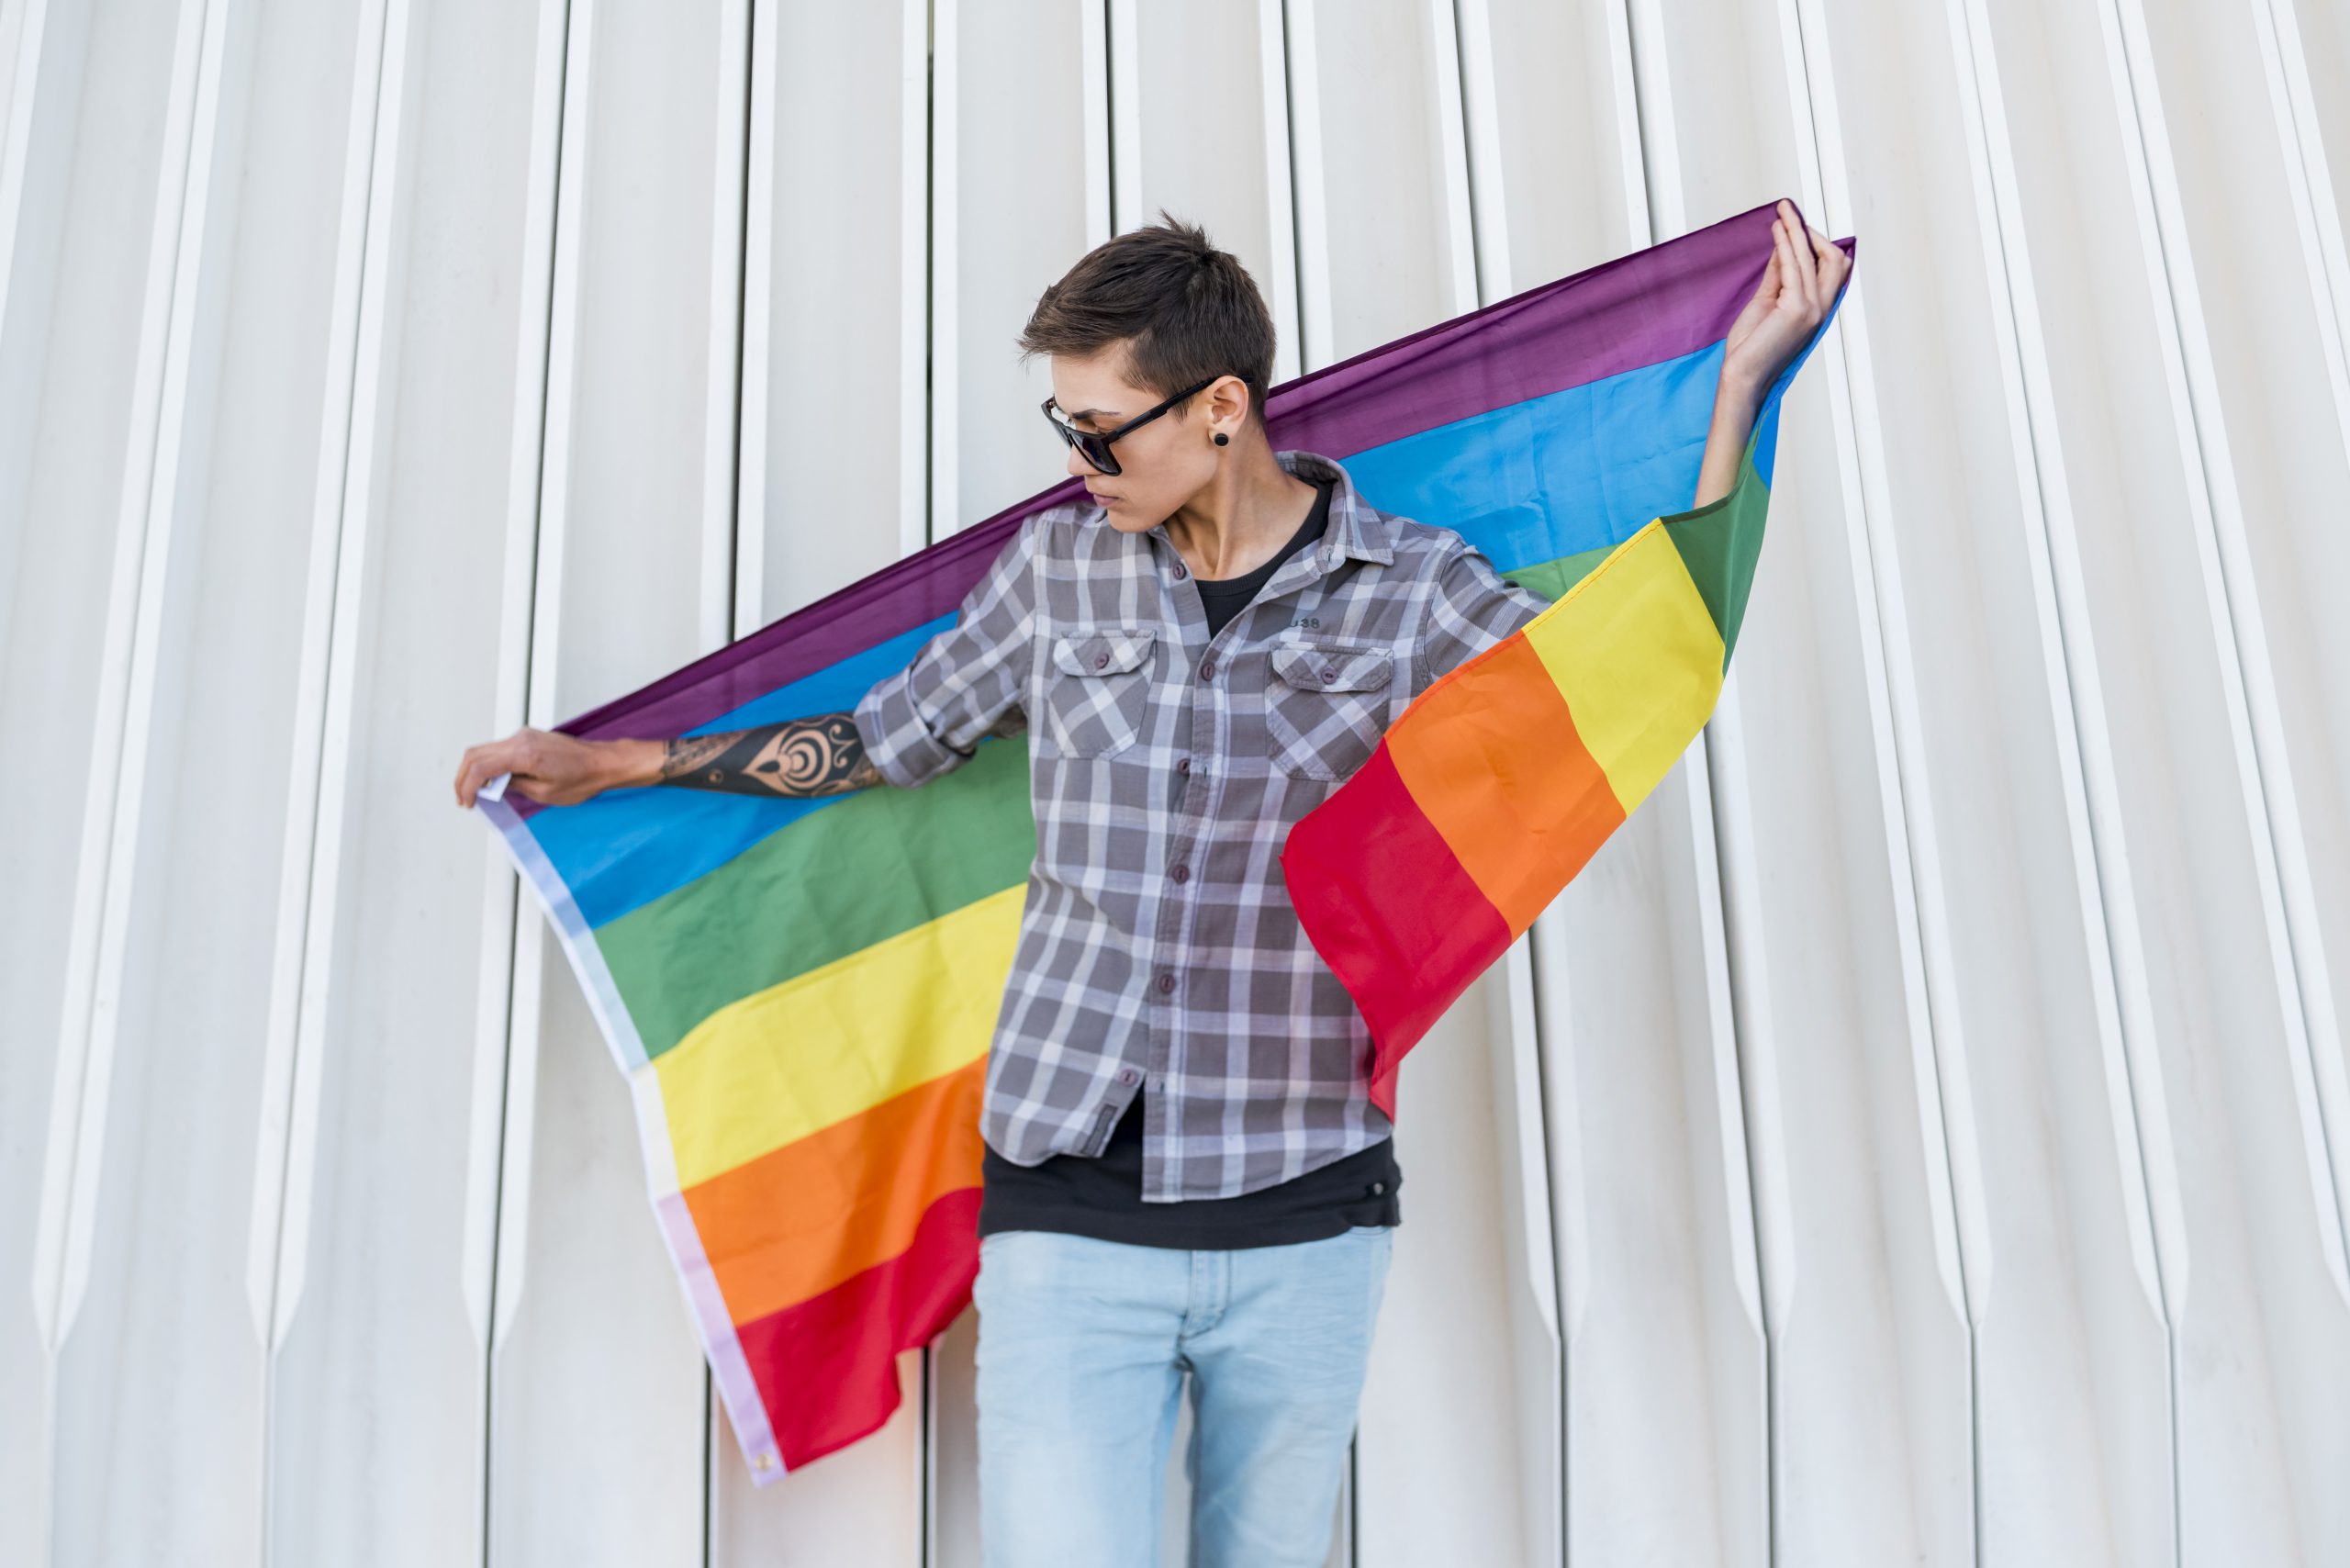 Ograniczanie praw osób LGBT